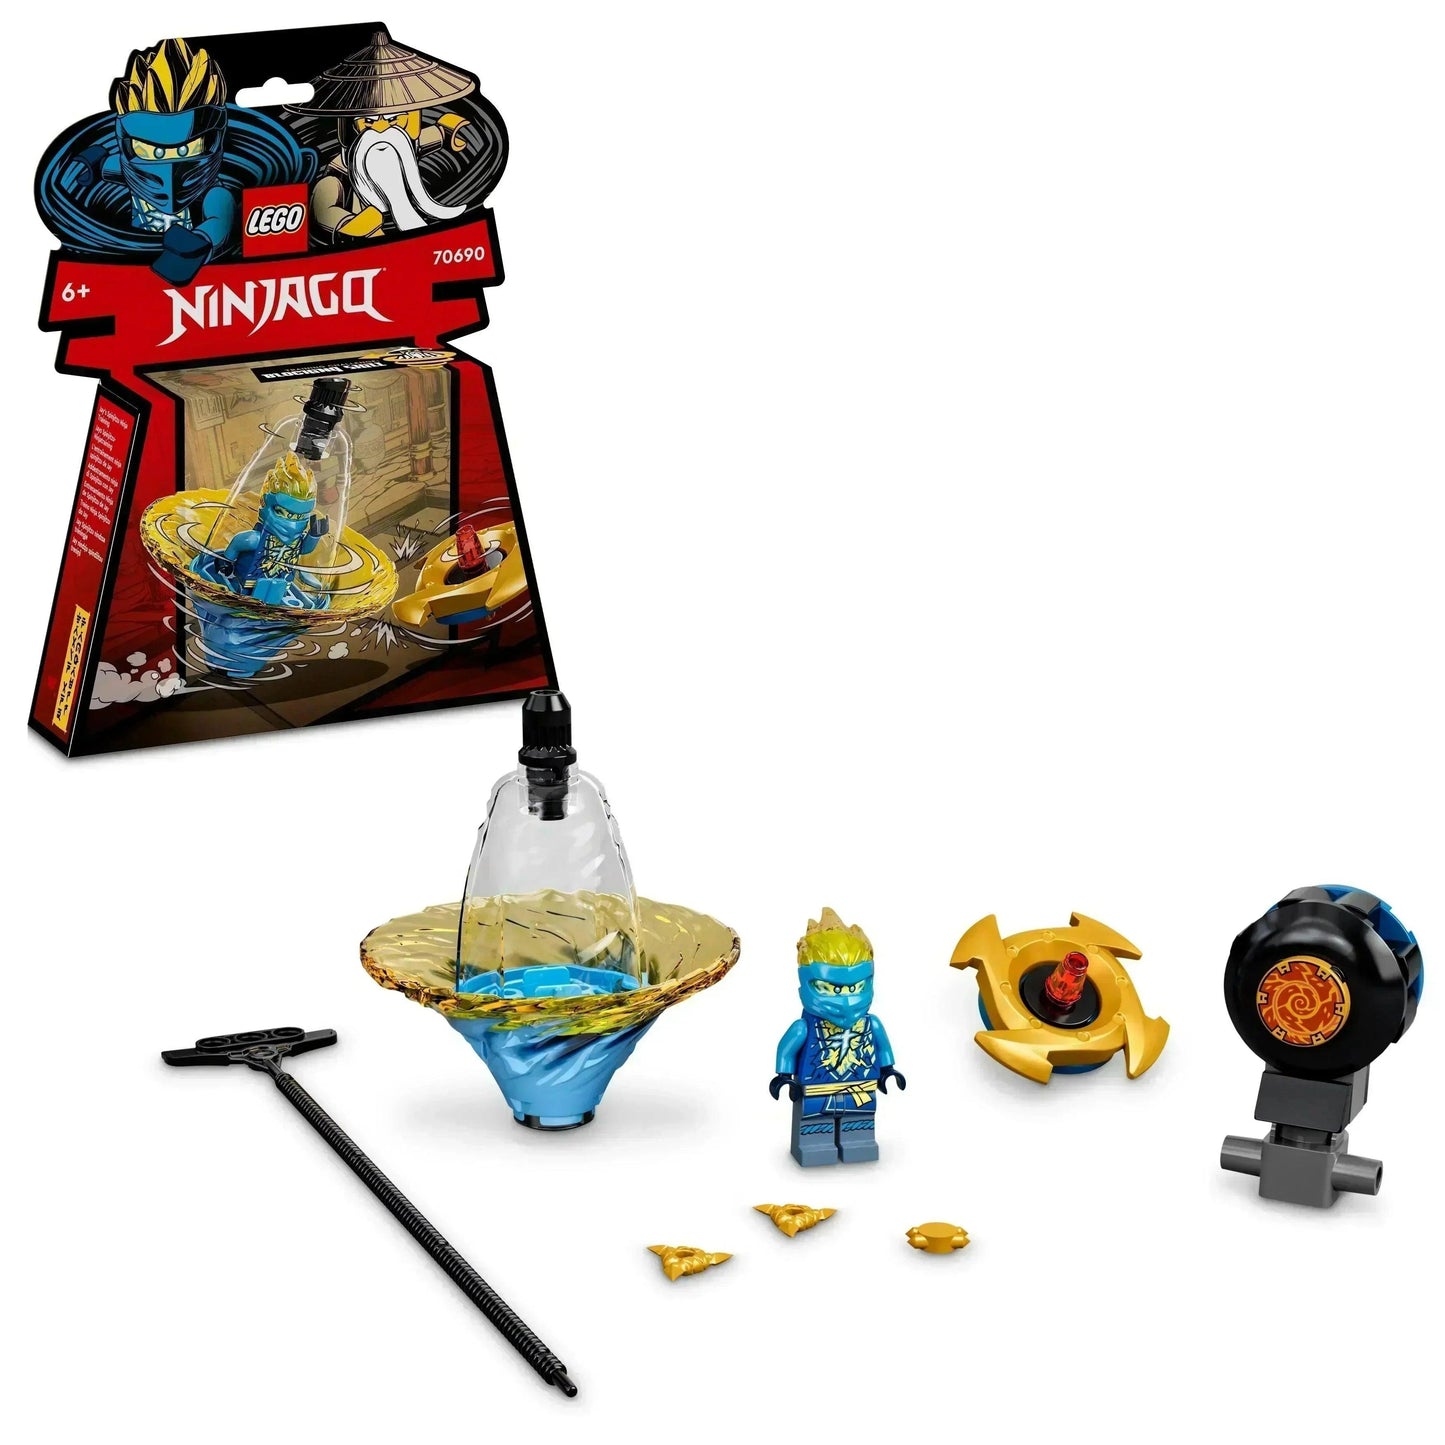 LEGO Jay's Spinjitzu ninjatraining 70690 Ninjago | 2TTOYS ✓ Official shop<br>